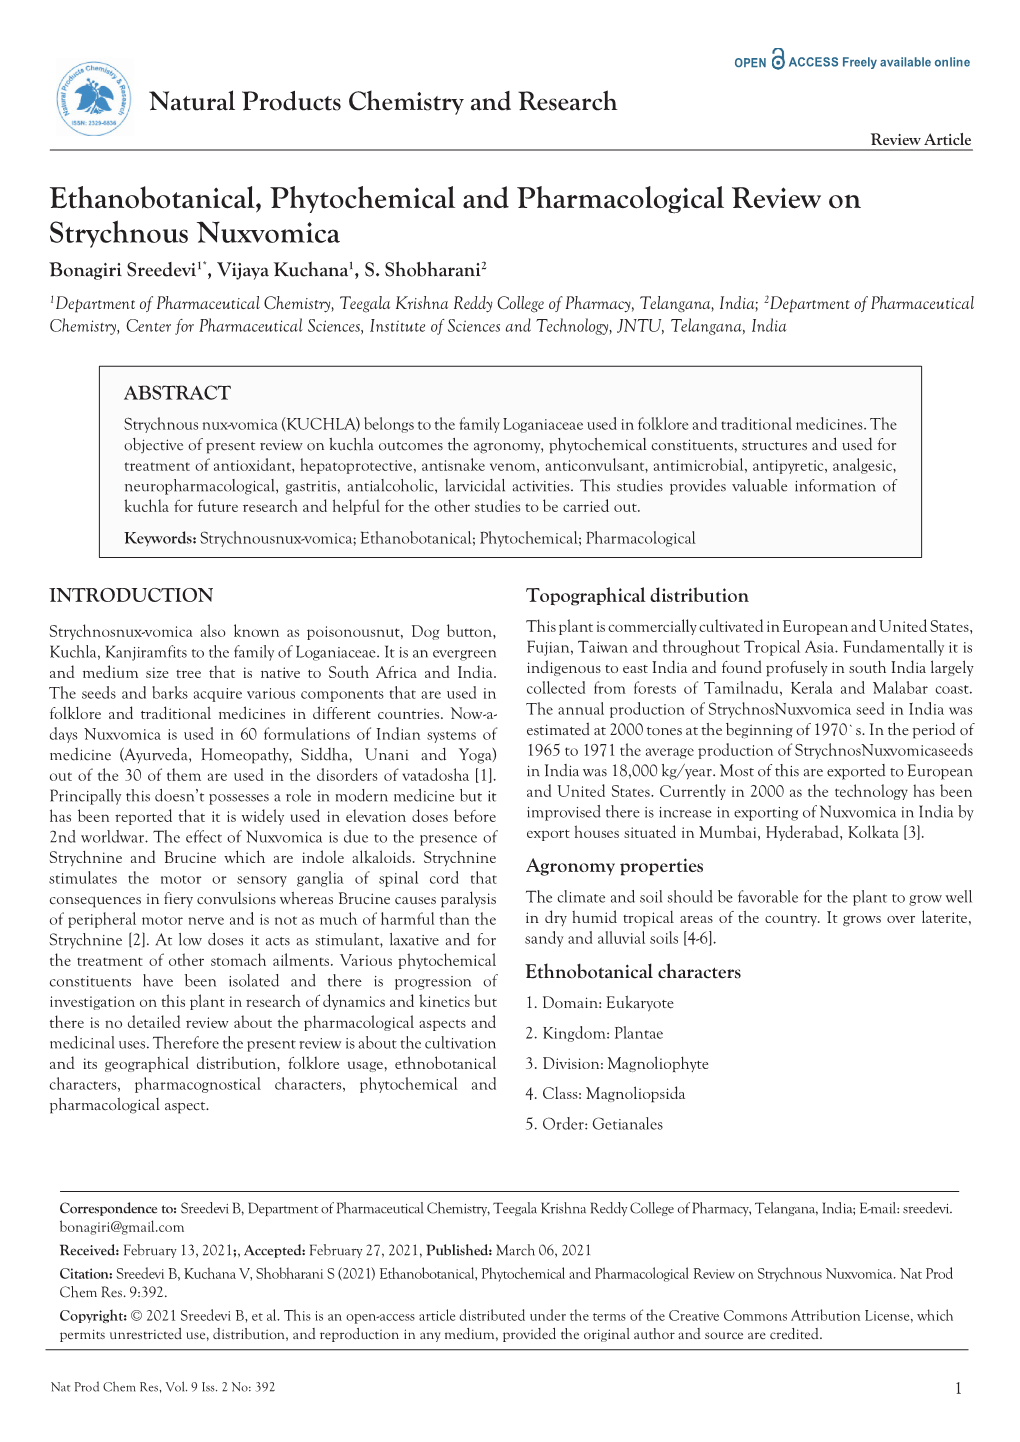 Ethanobotanical, Phytochemical and Pharmacological Review on Strychnous Nuxvomica 1* 1 2 Bonagiri Sreedevi , Vijaya Kuchana , S